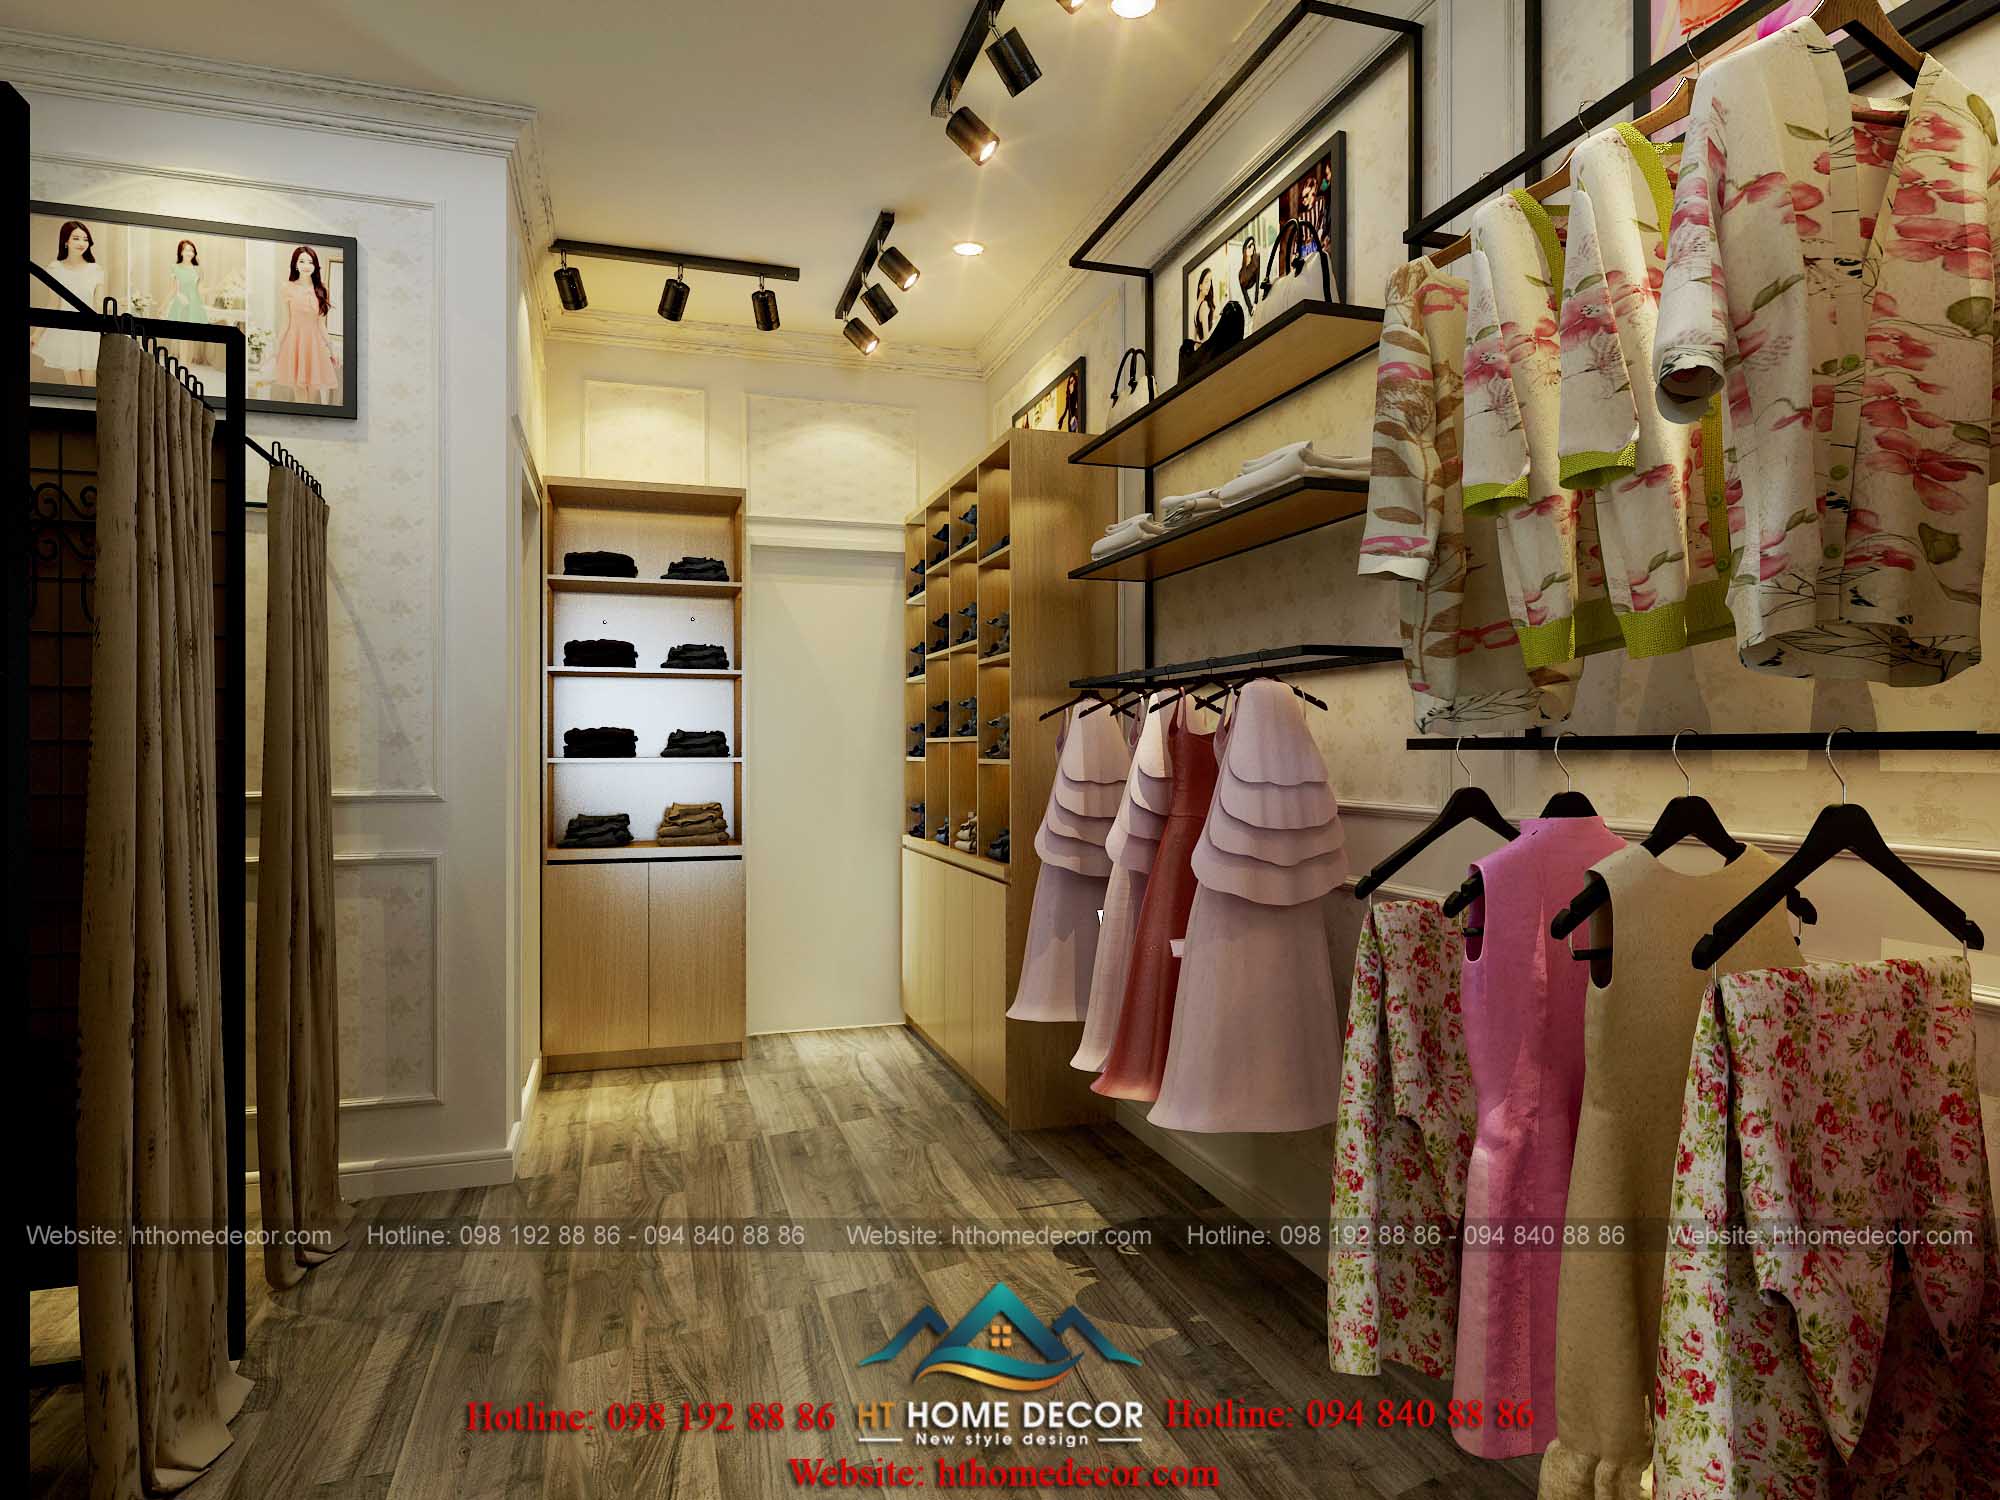 Mỗi loại trang phục được trưng bày trên các kệ, tủ khác nhau. Thuận tiện cho việc lựa chọn mua sắm của khách hàng.